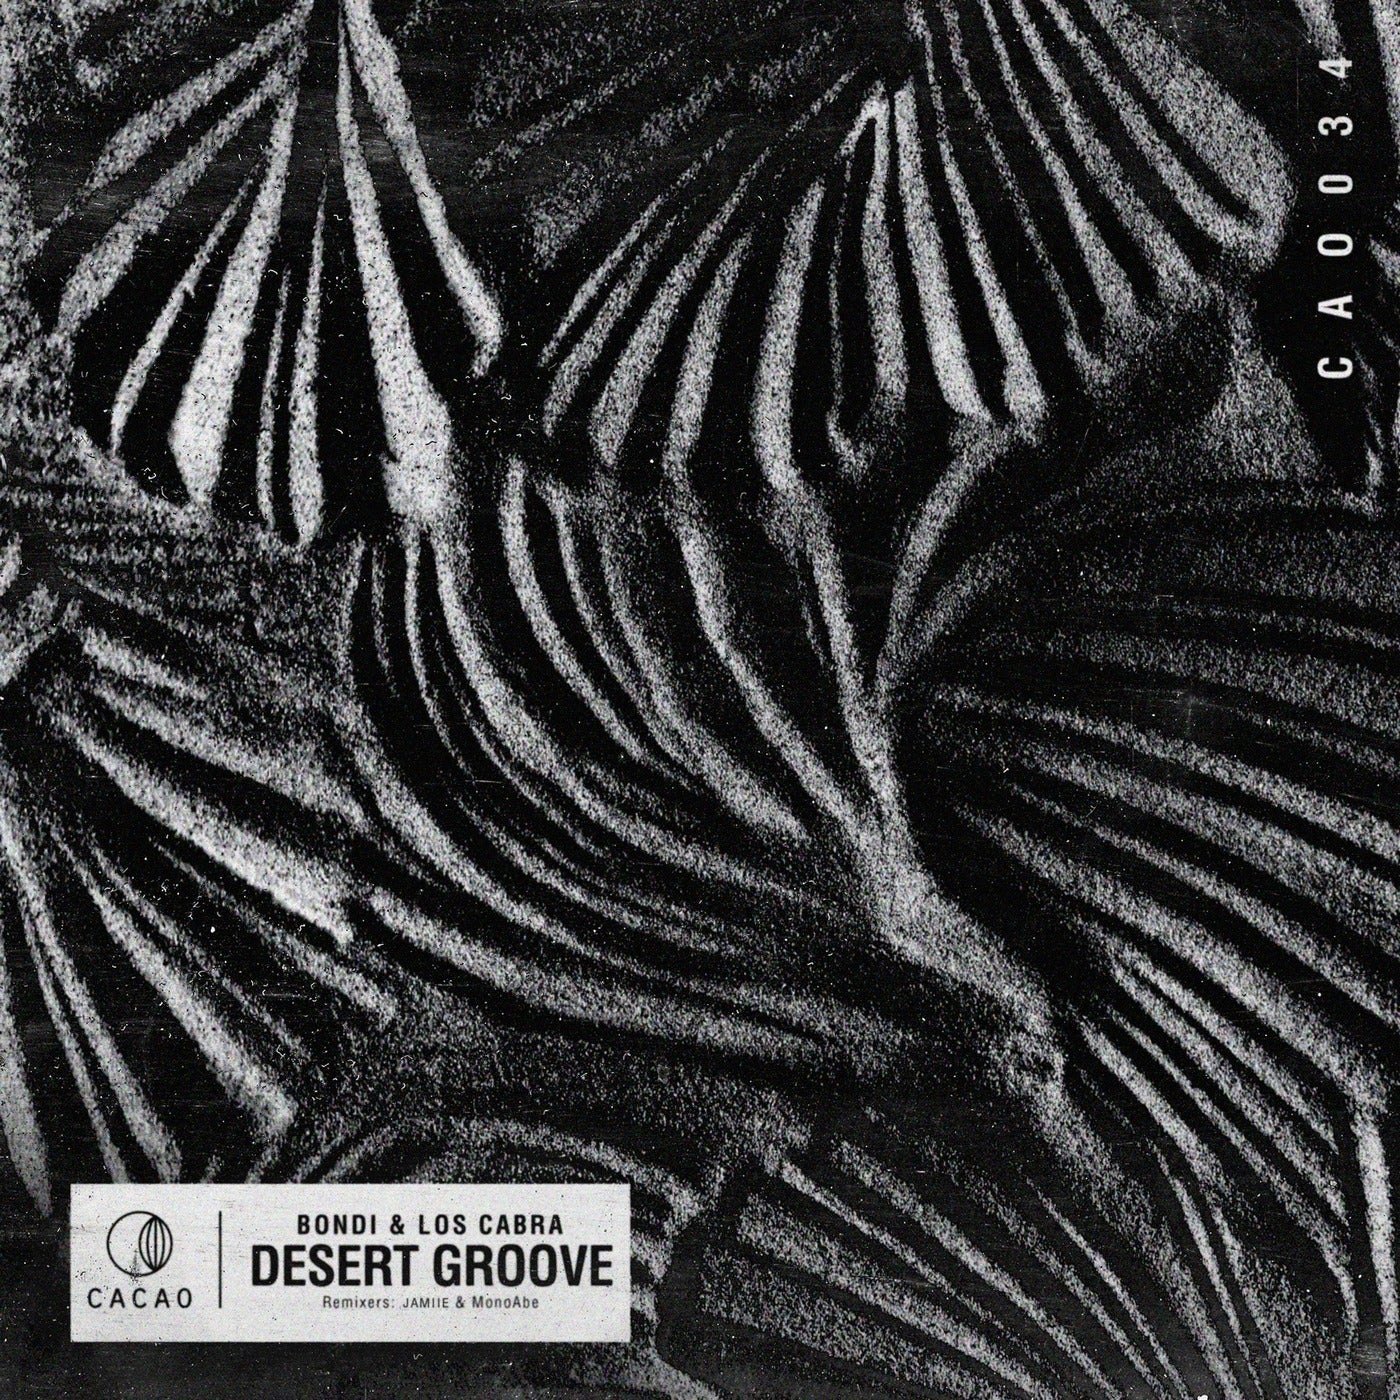 Desert Groove